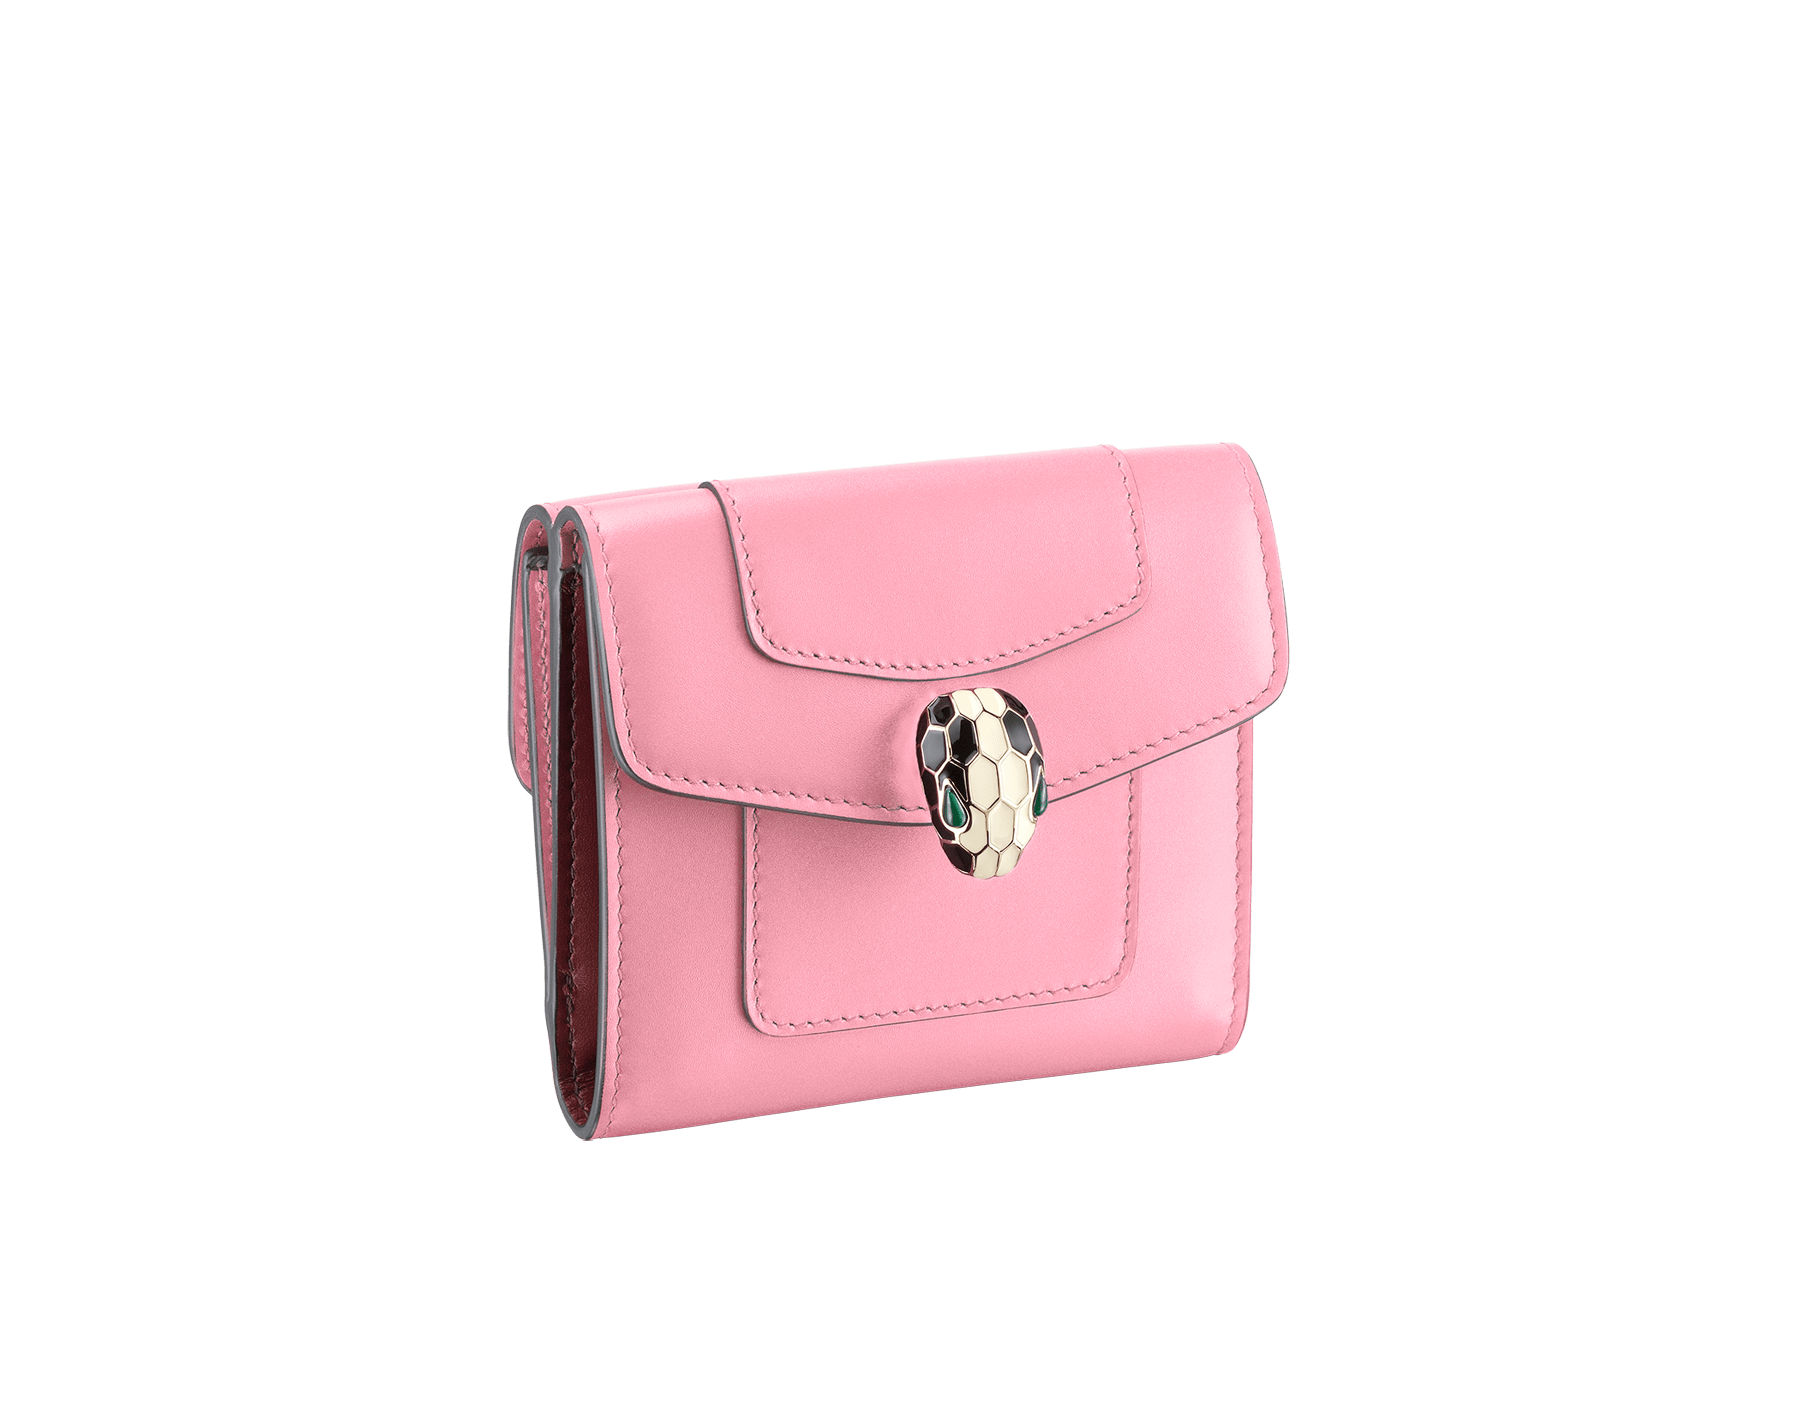 bvlgari pink wallet